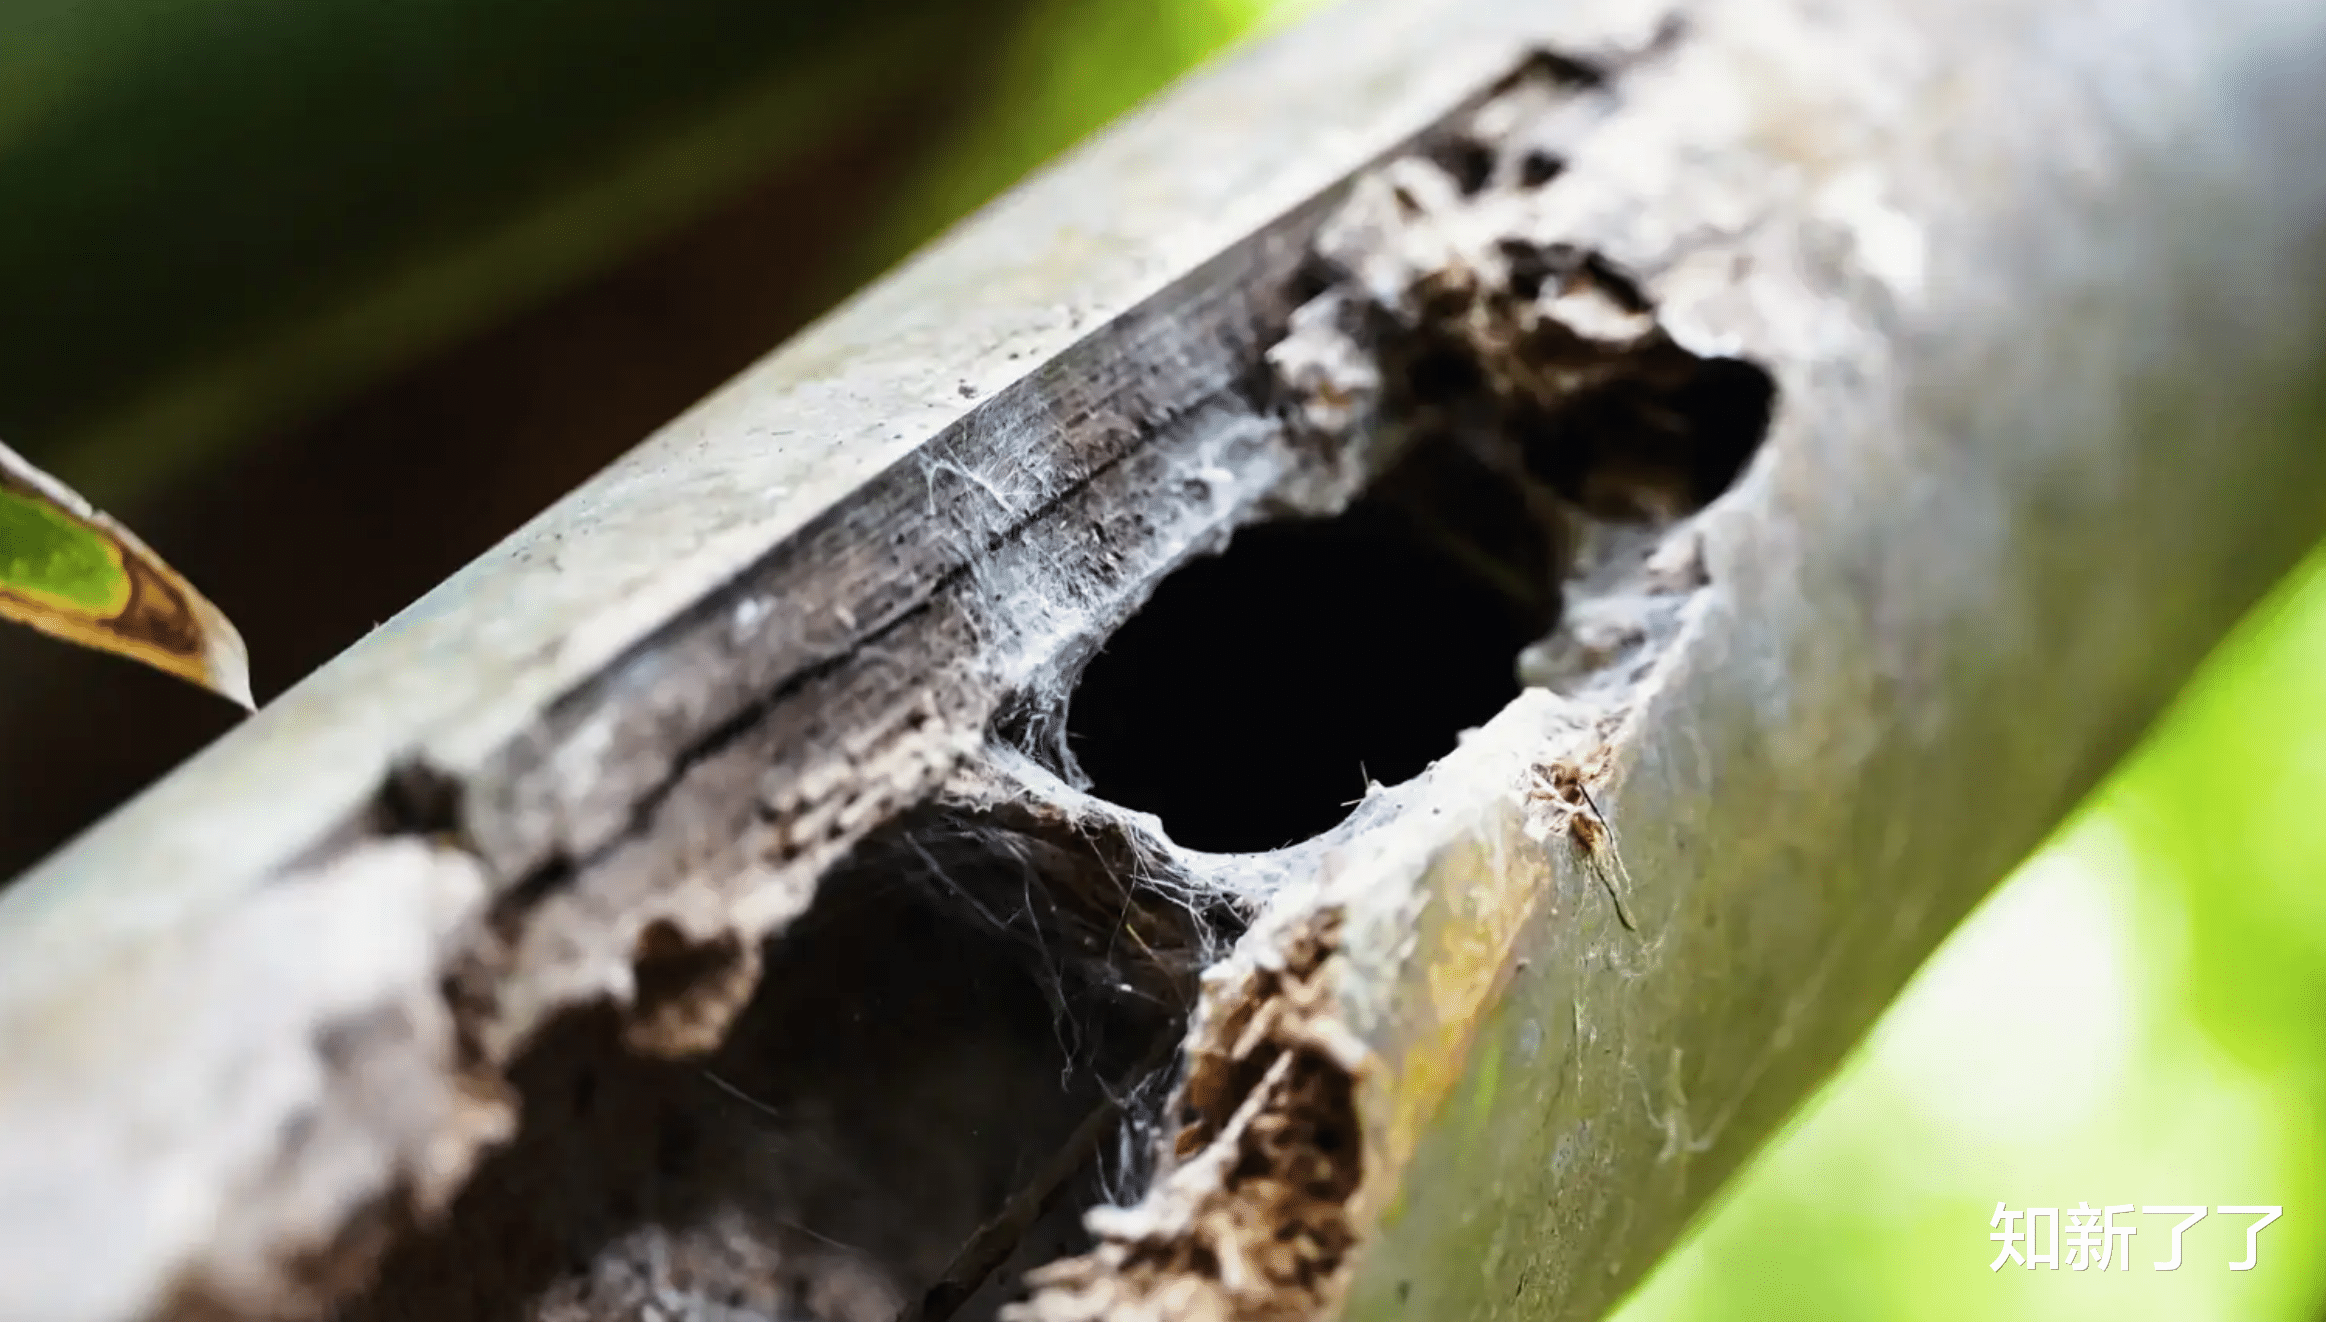 一种新发现的狼蛛喜欢潜伏在竹子里